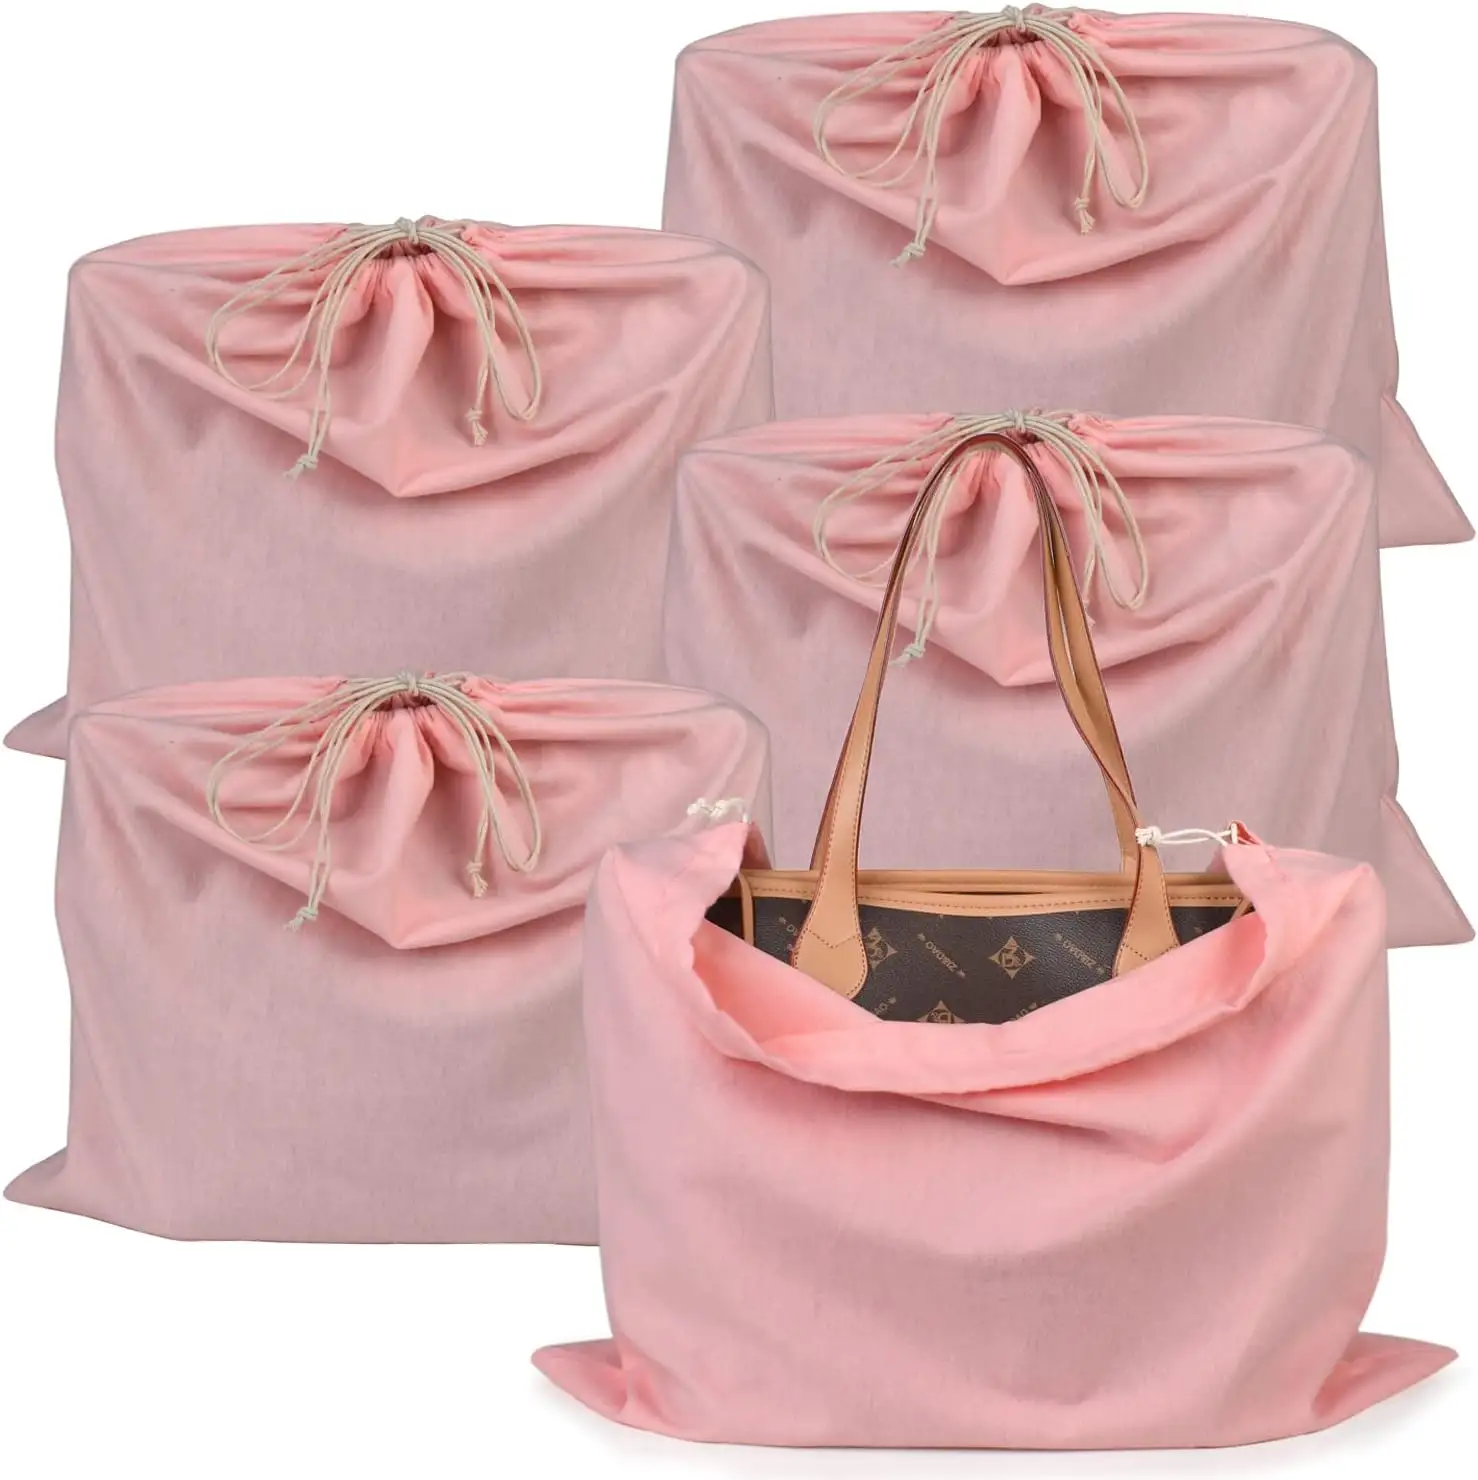 Tas sepatu merah muda pelindung debu, tas penutup debu sutra penyimpanan perjalanan untuk tas tangan atau sepatu dan dompet